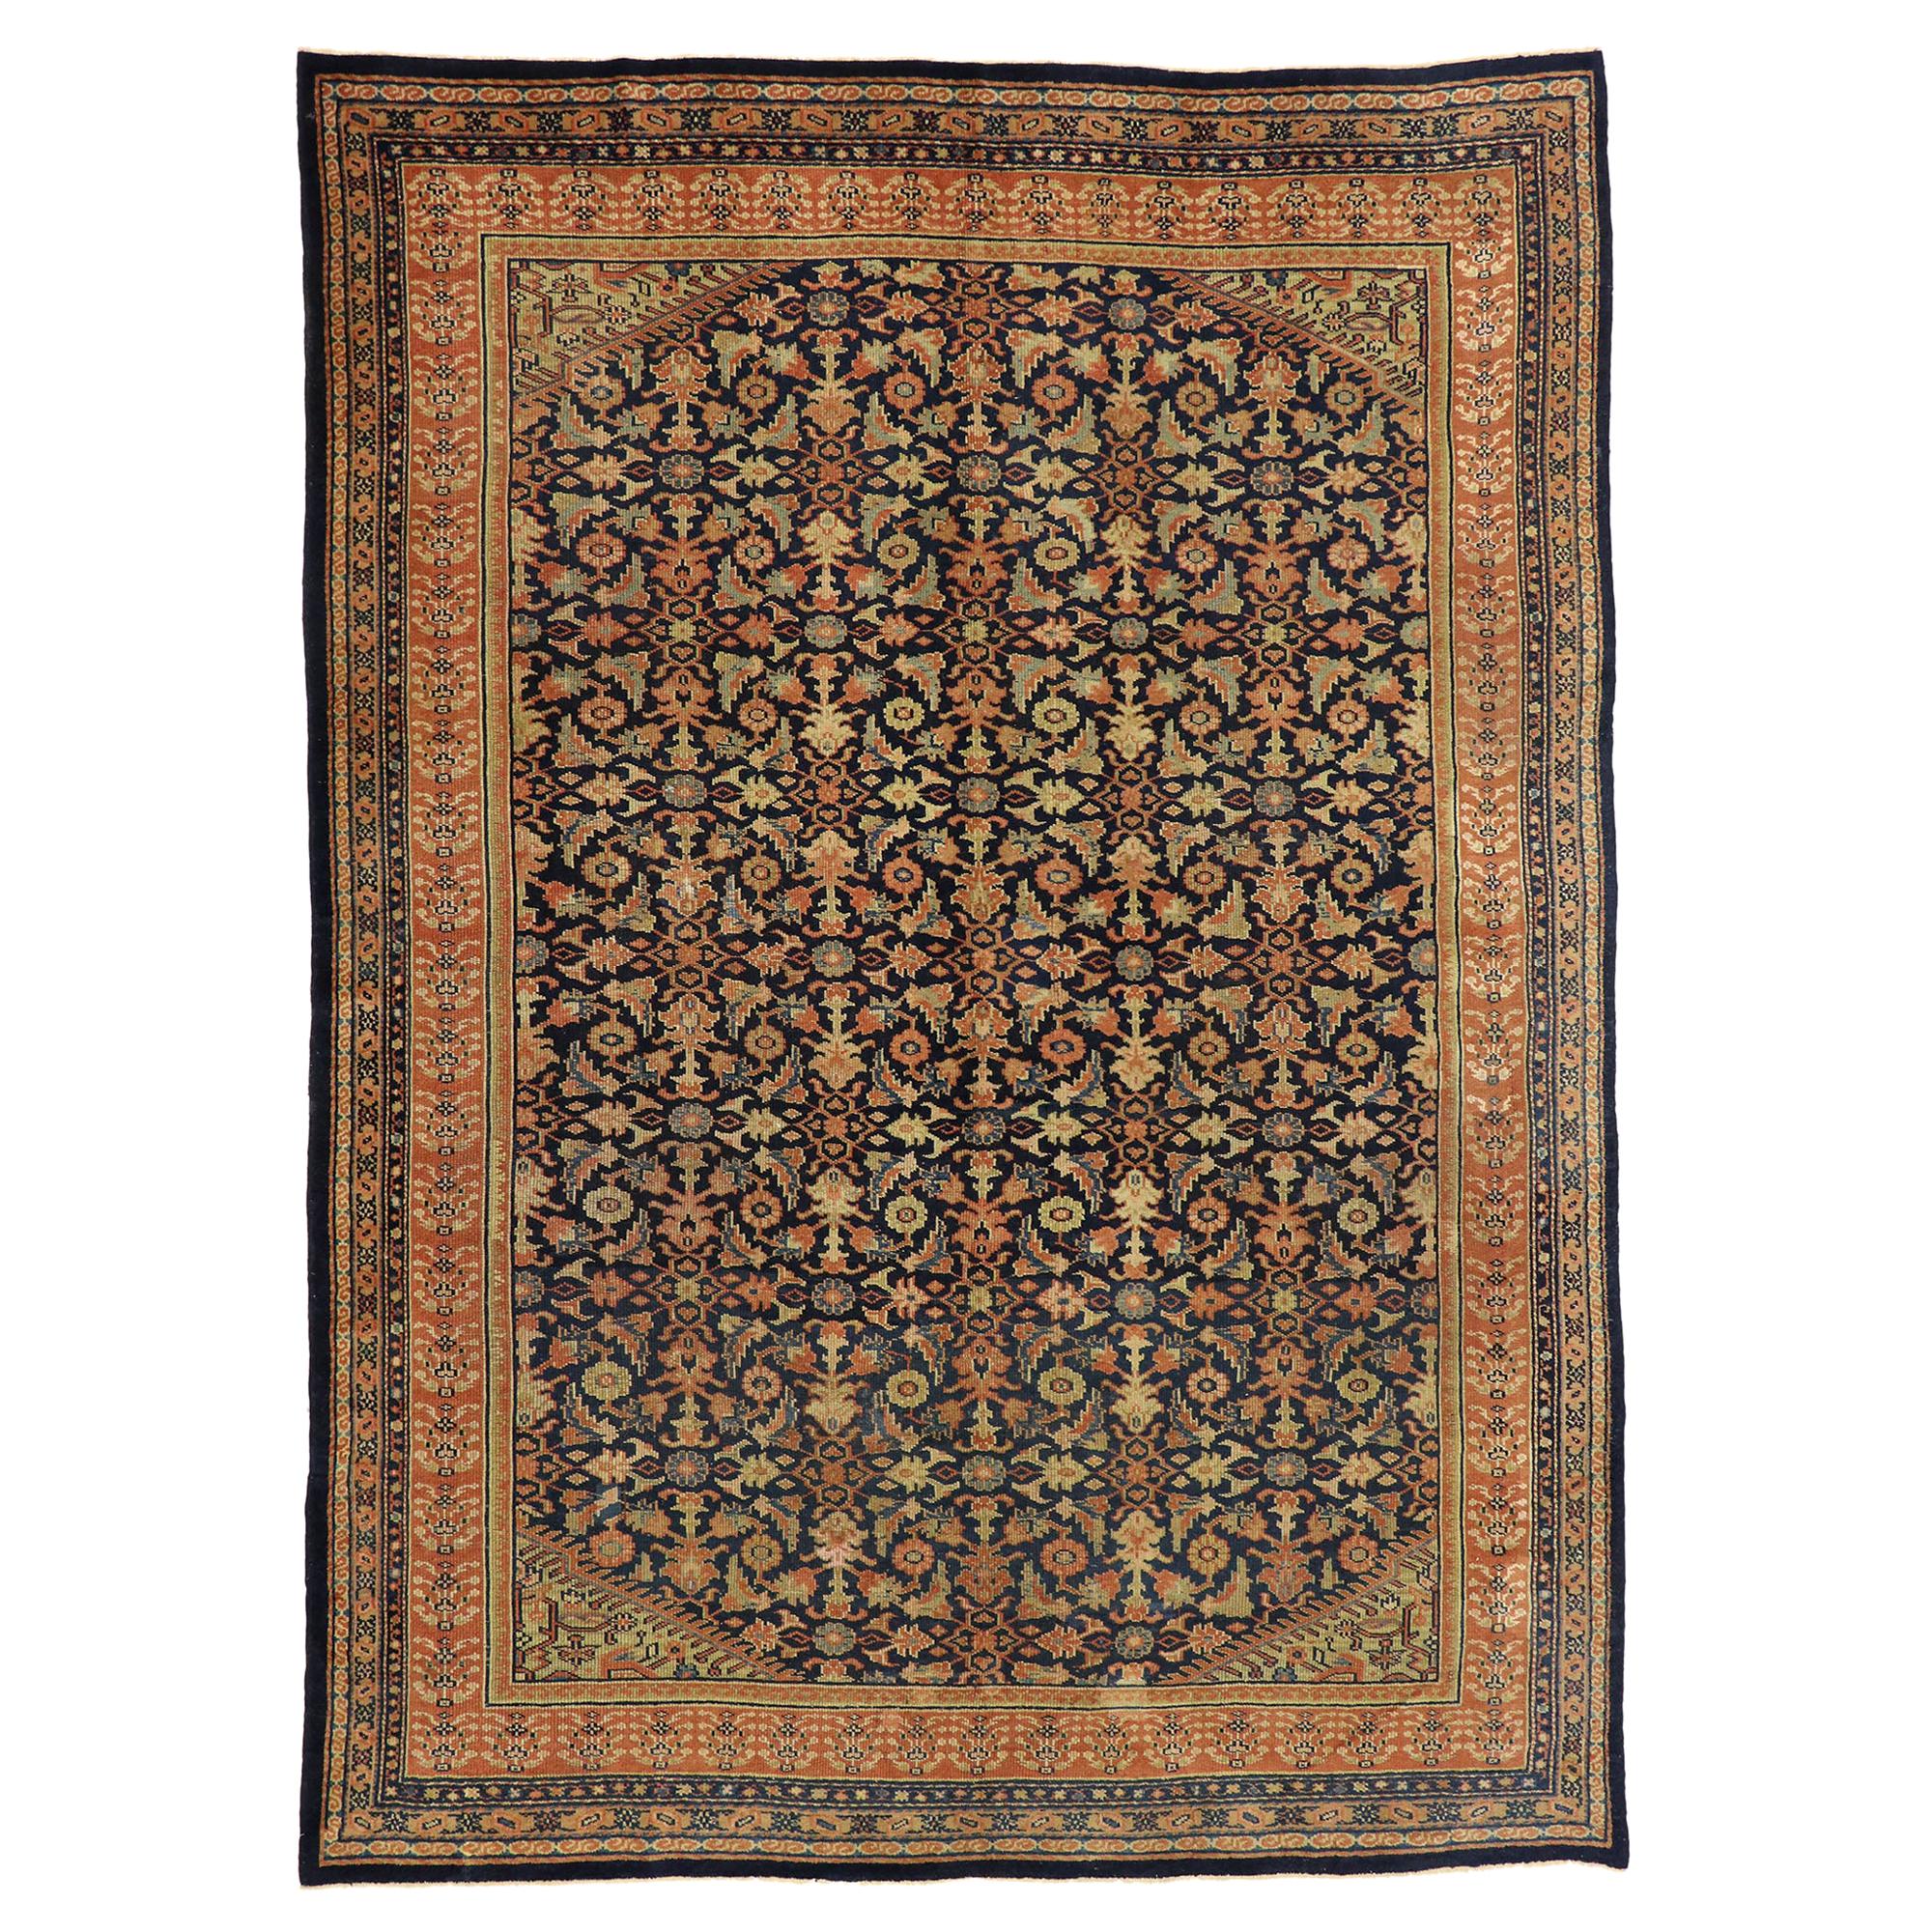 Antiker persischer Kurdischer Teppich des späten 19. Jahrhunderts mit traditionellem englischem Stil